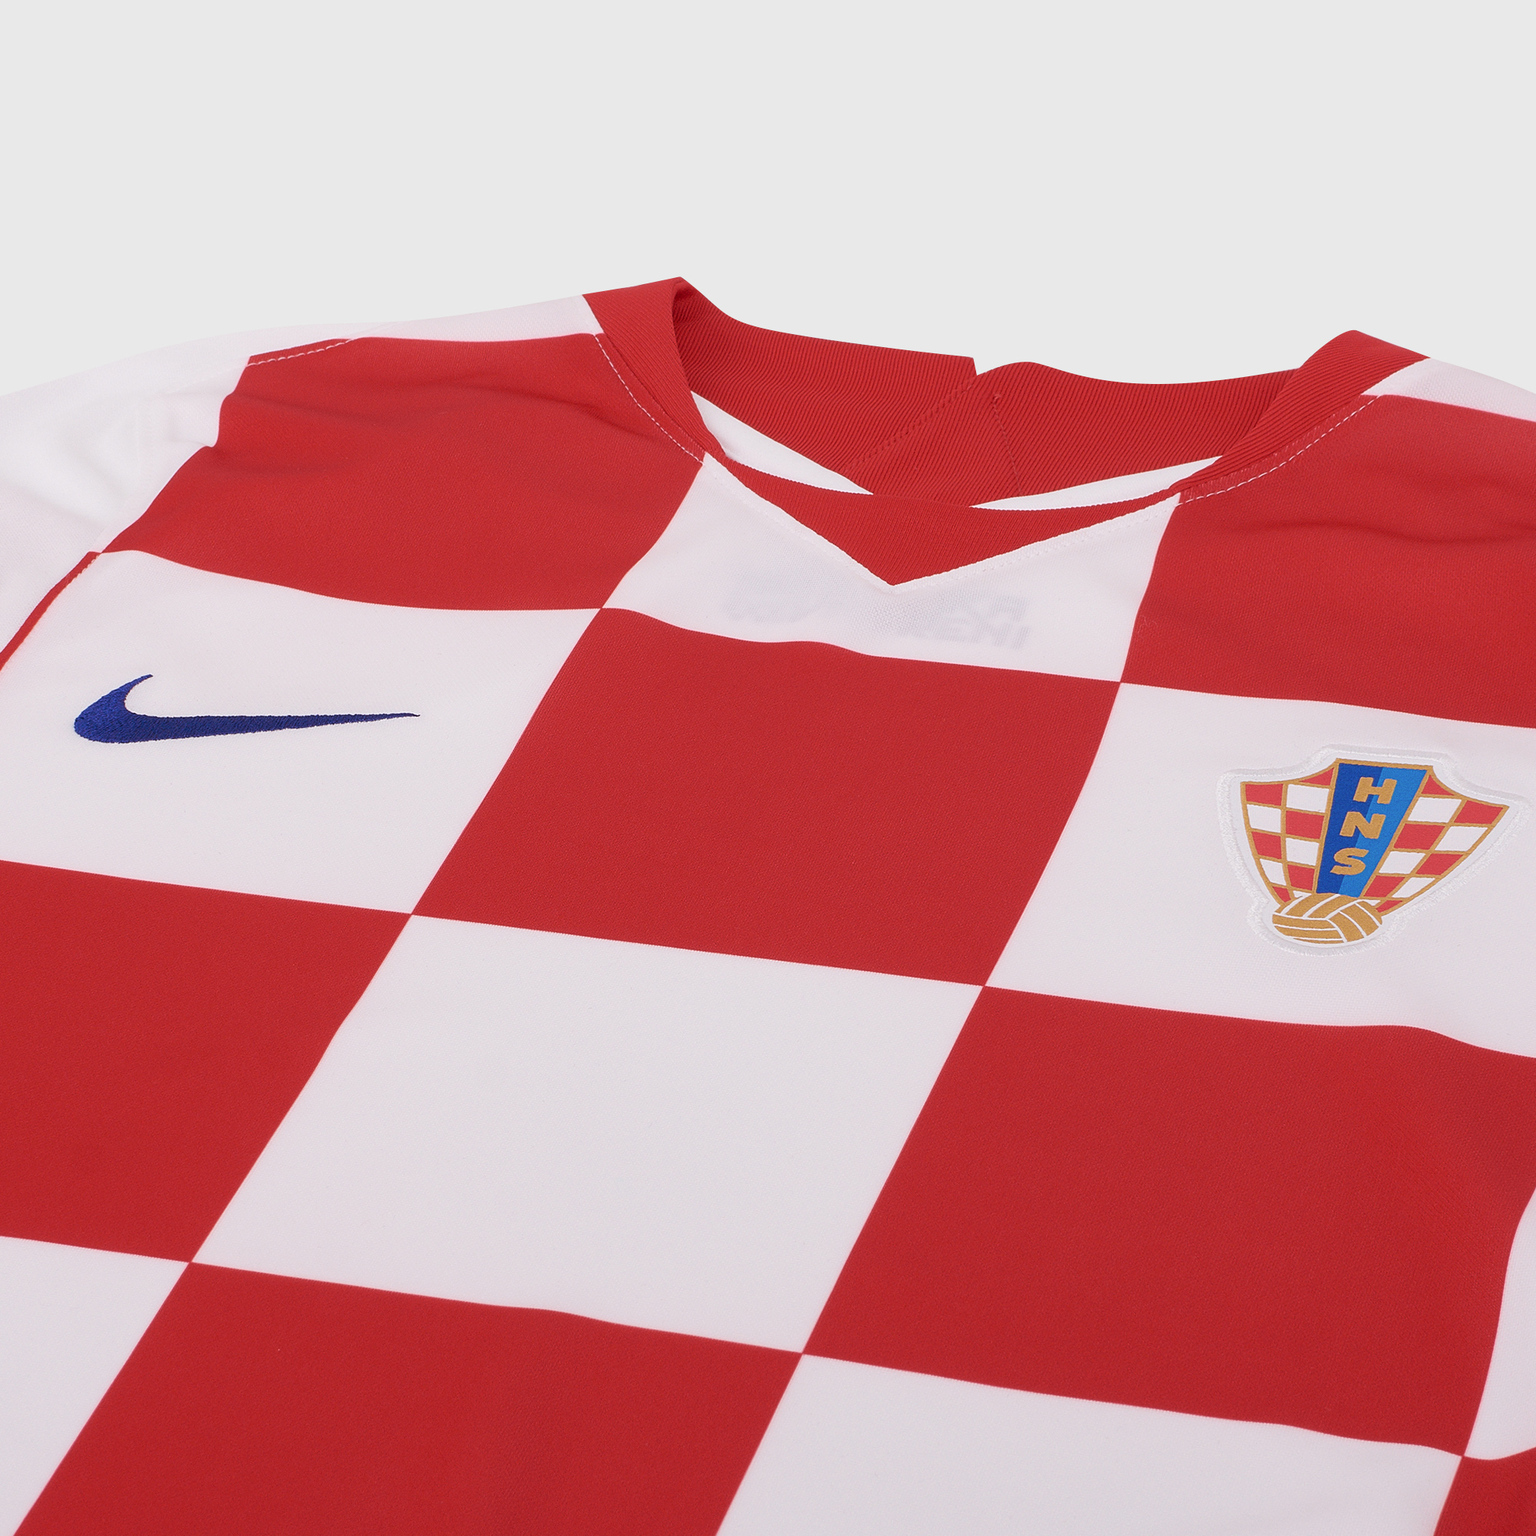 Футболка игровая домашняя Nike сборной Хорватии сезон 2020/21